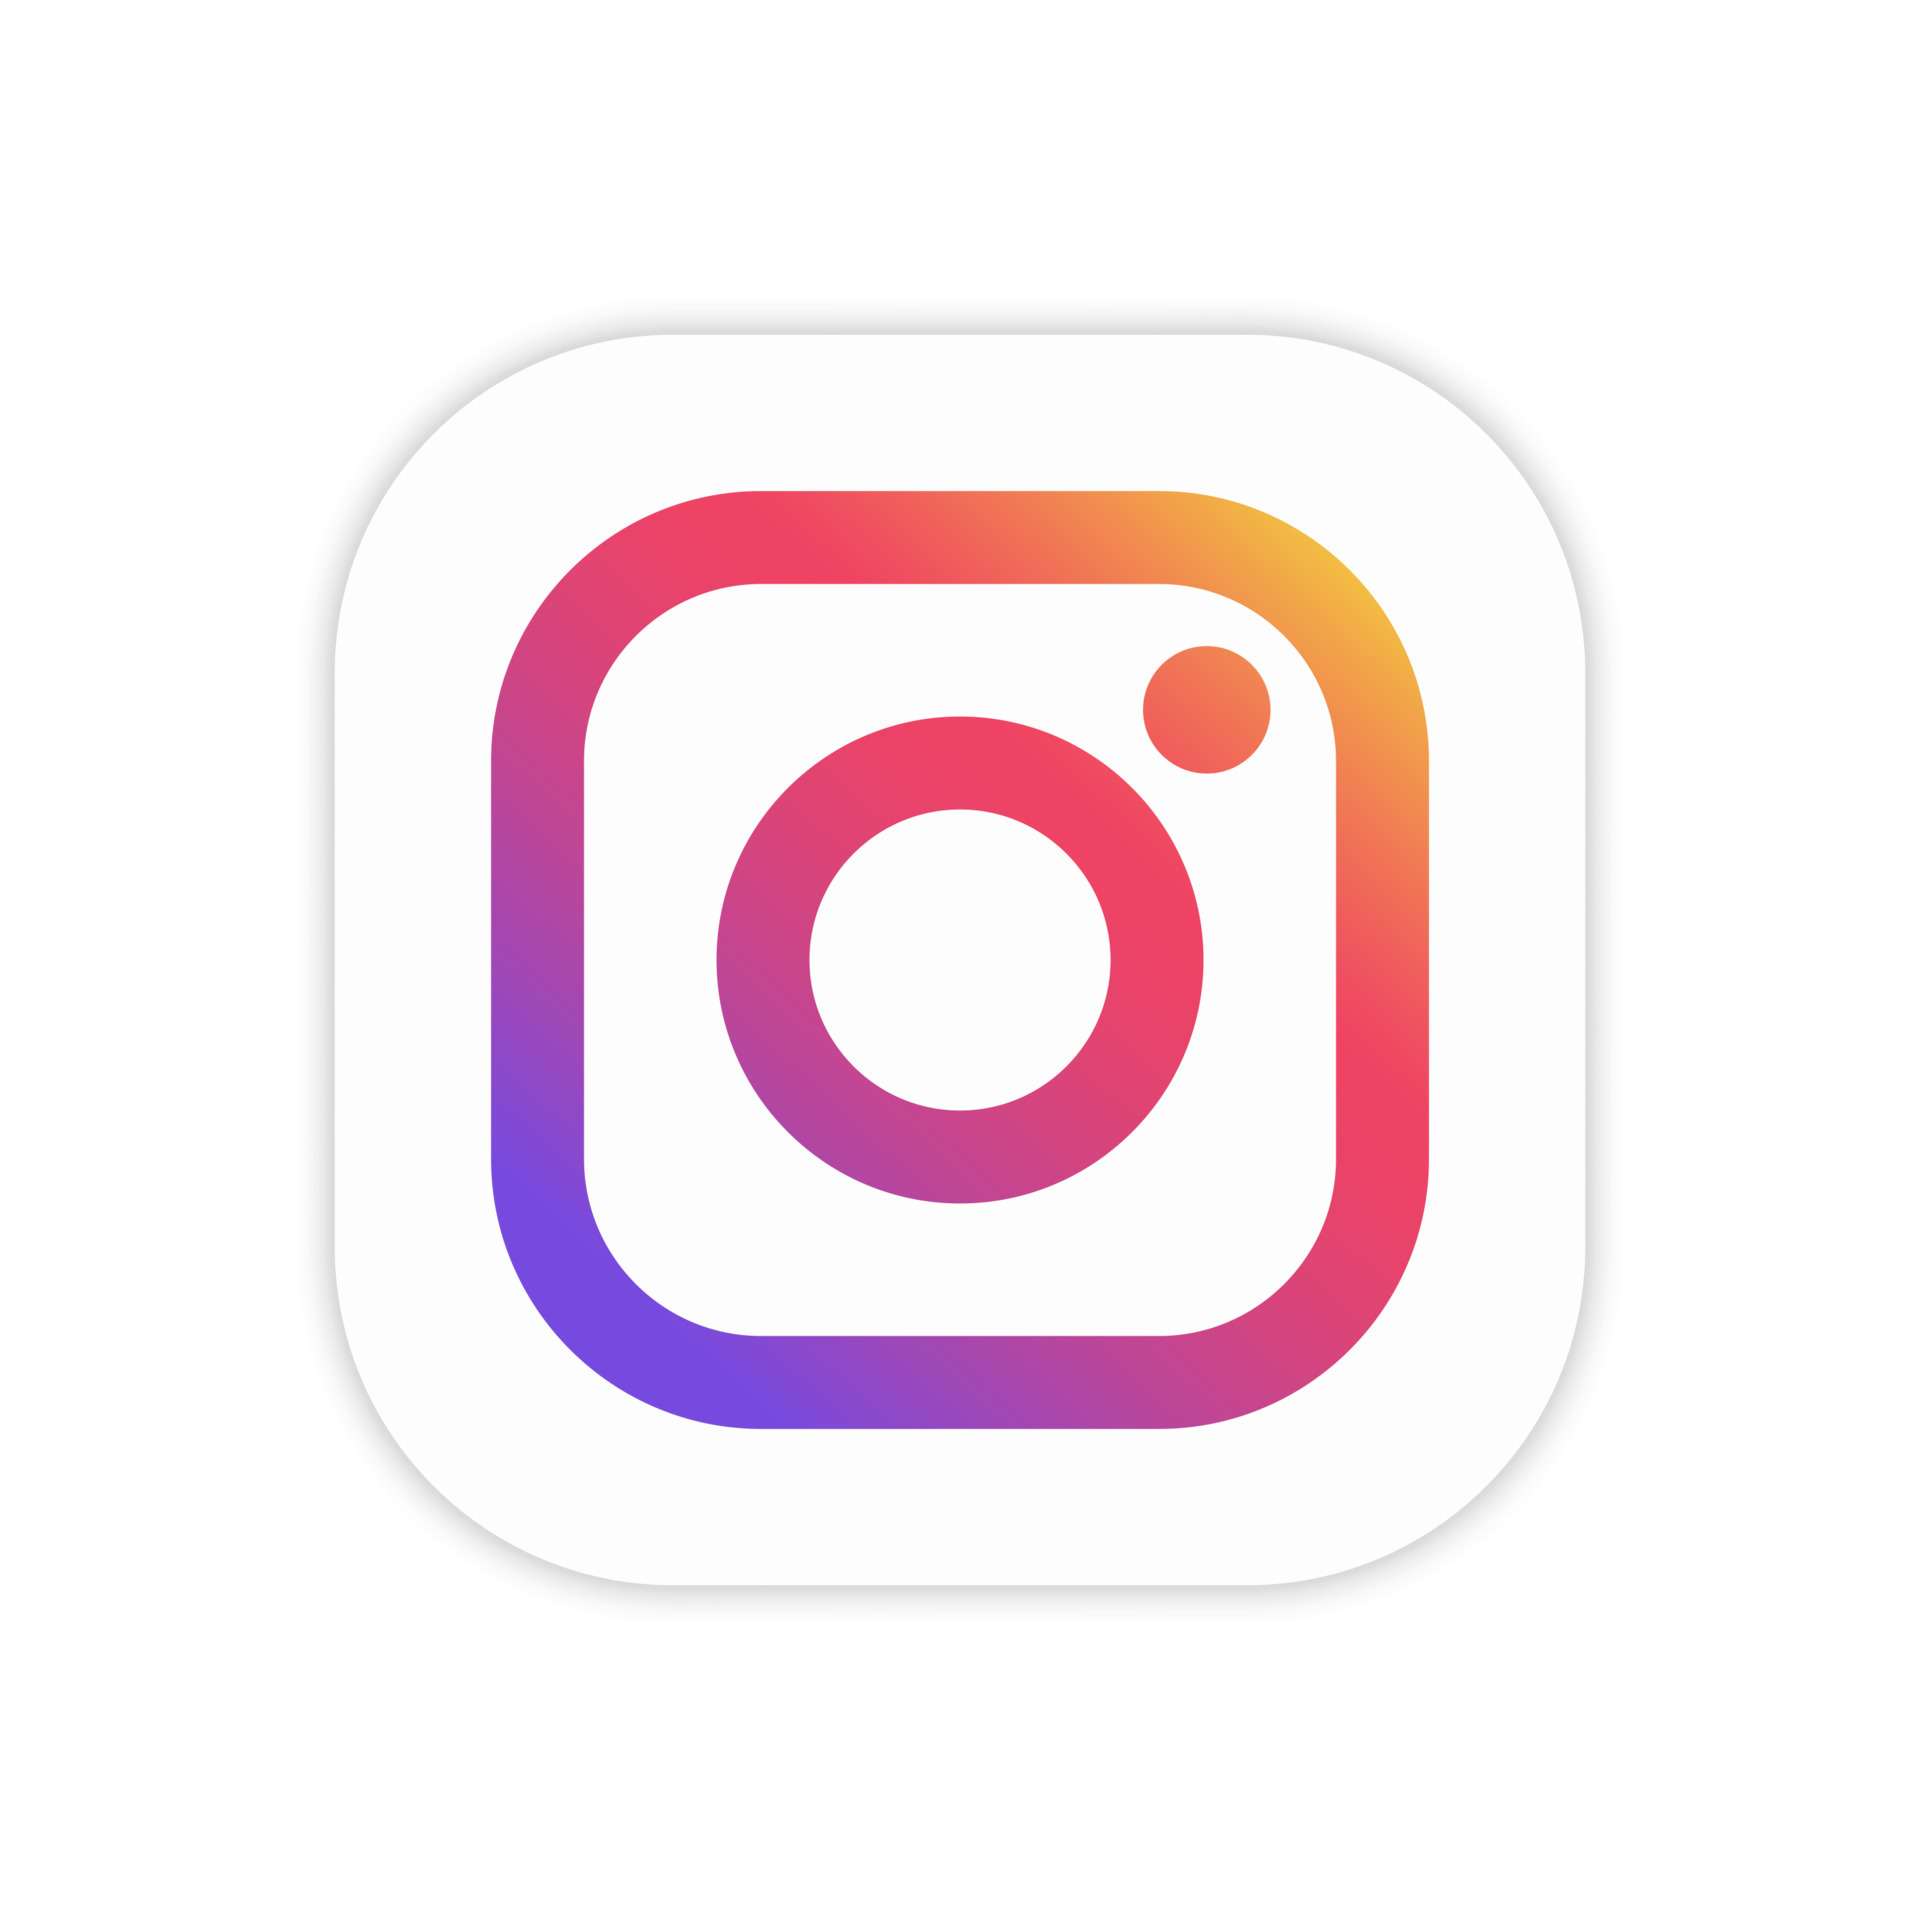 Biểu tượng ứng dụng Instagram trên nền trắng được cô lập sẽ mang đến cho bạn những bức ảnh đẹp mắt với sự đơn giản, thanh lịch, nhưng không kém phần hiện đại. Nổi bật trong đó sẽ là những tính năng mới, tiên tiến và đa dạng, đem đến cho bạn trải nghiệm tuyệt vời nhất.